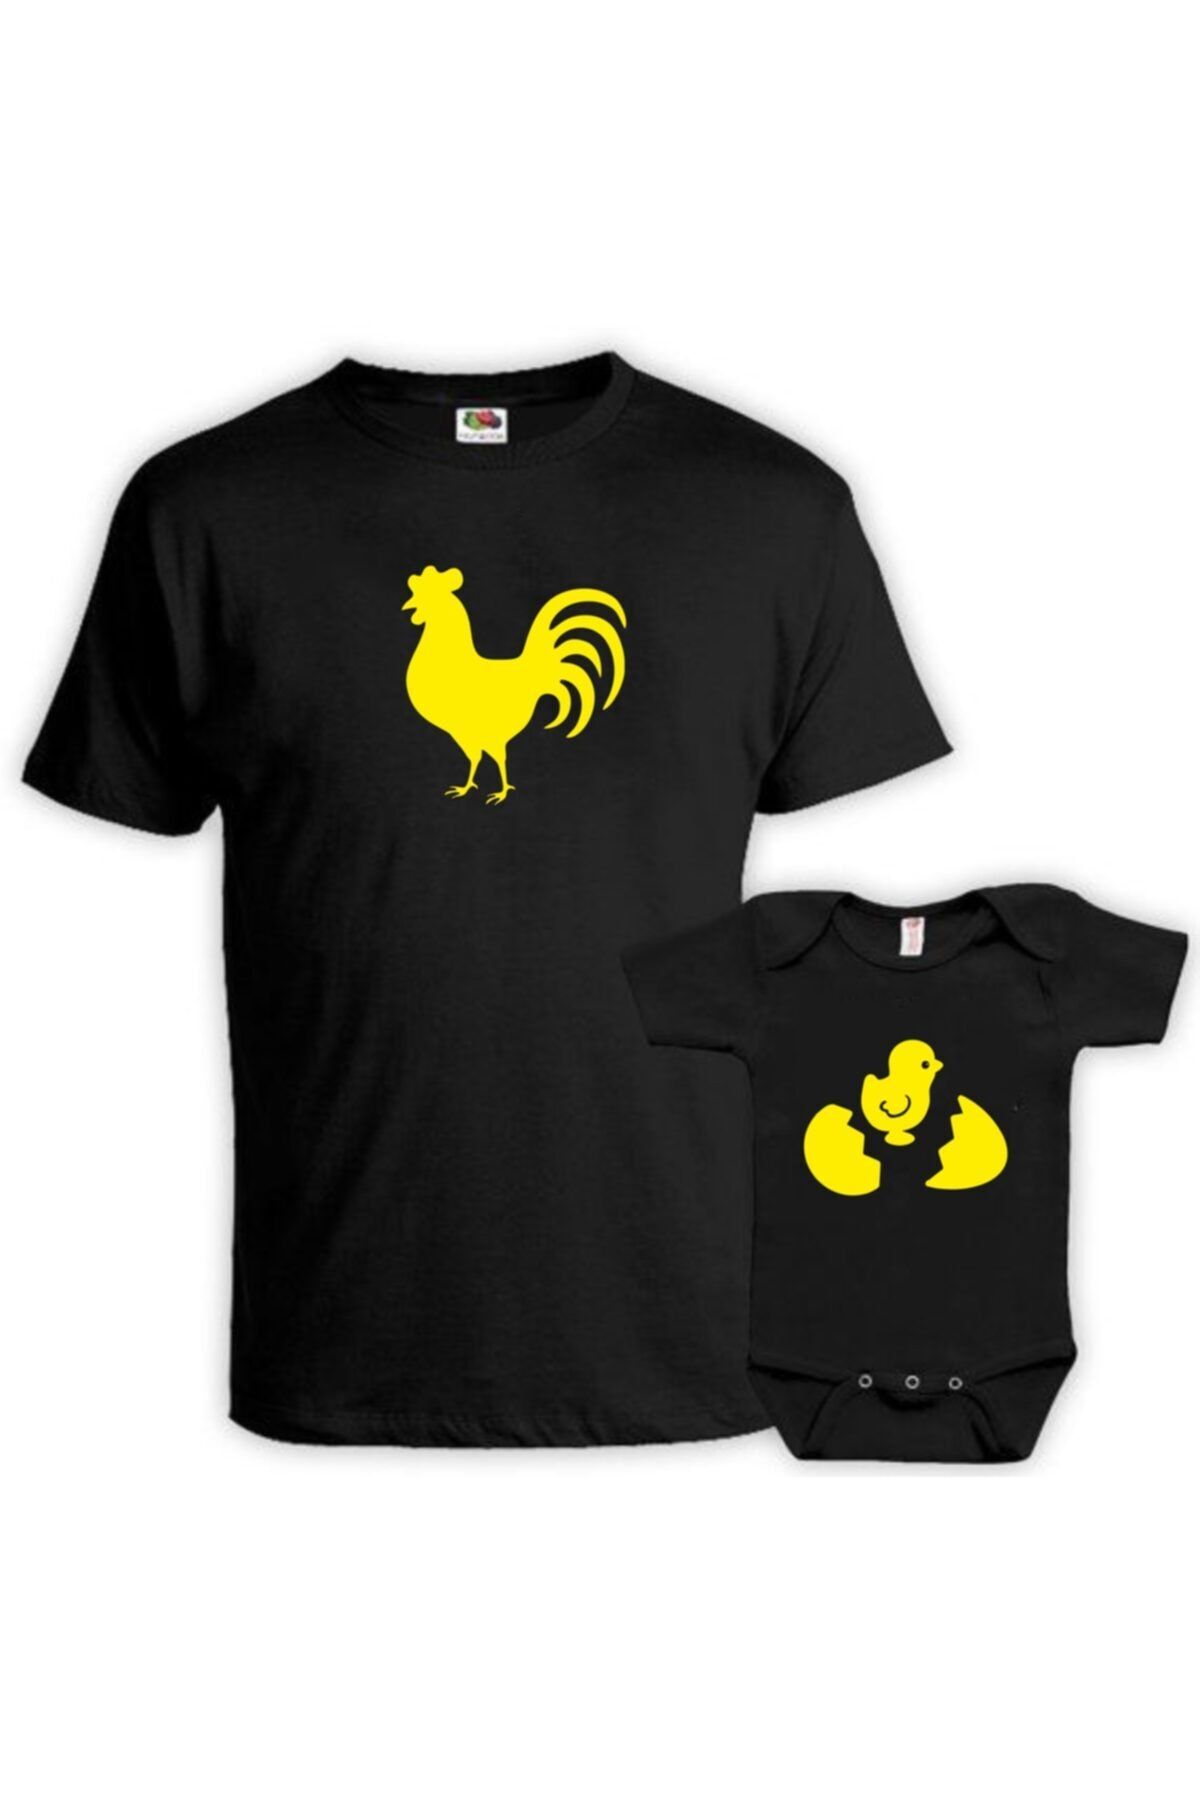 venüsdijital Horoz Civciv Baba Oğul Siyah Tshirt Zıbın (tekil Üründür Kombin Yapılabilir Fiyatları Ayrı Ayrıdır)